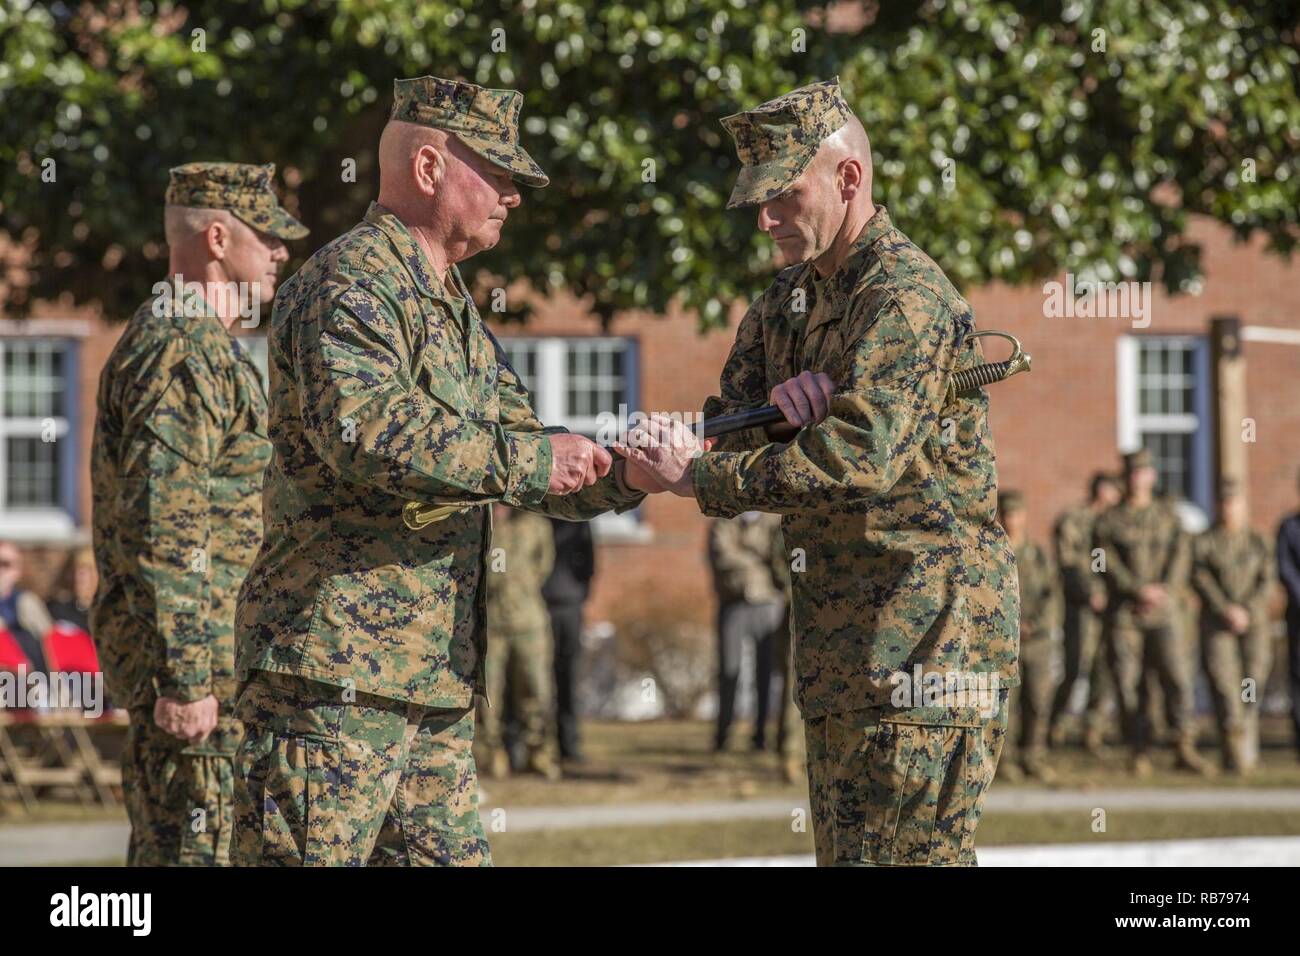 Cuerpo de Marines de EE.UU Gral. Gen. Walter L. Miller Jr., a la izquierda, el comandante general de la Fuerza Expedicionaria de la Marina II (MEF), pasa el suboficial espada a Sgt. Richard D. Gral Trilla, durante el emblemático pasando de la espada de Office como parte de una ceremonia de nombramiento y de socorro en Marine Corps Base Camp Lejeune, N.C., el 15 de diciembre, 2016. El Sgt. Gral. Bryan K. Zickefoose cesó en su cargo como II MEF sargento mayor de Sgt. Richard D. Gral Trilla. Foto de stock